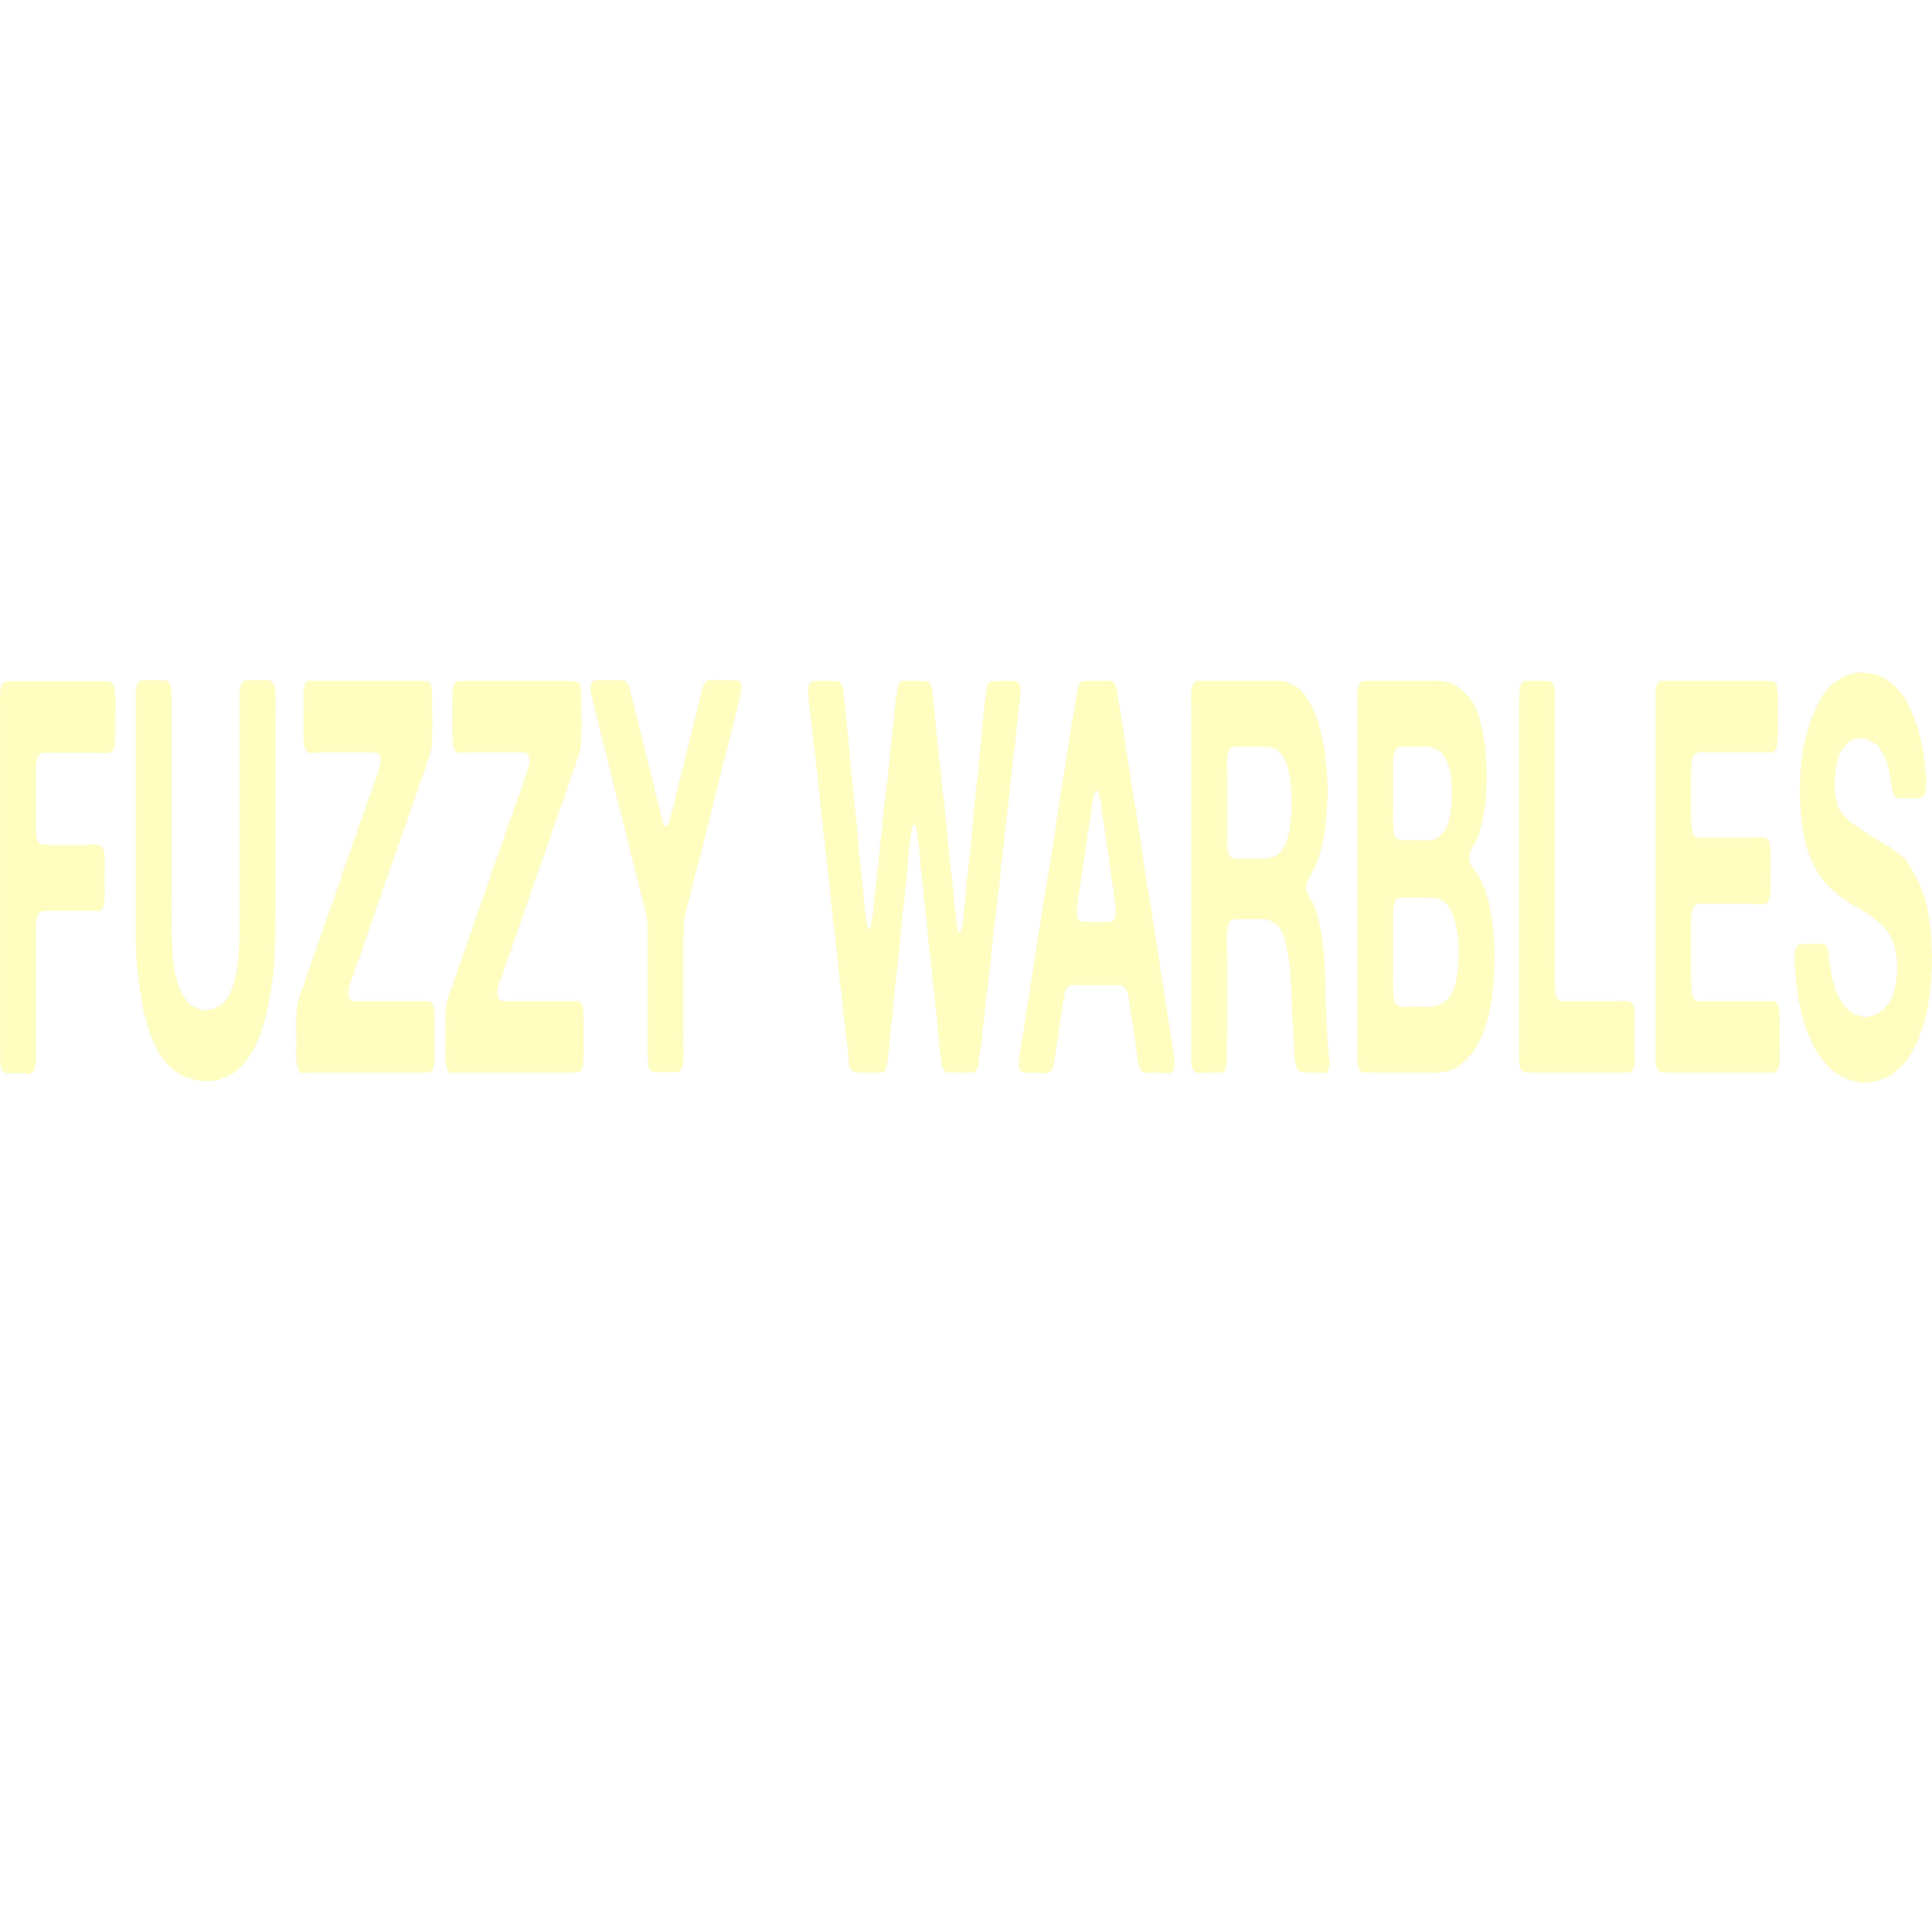 Fuzzy Warbles